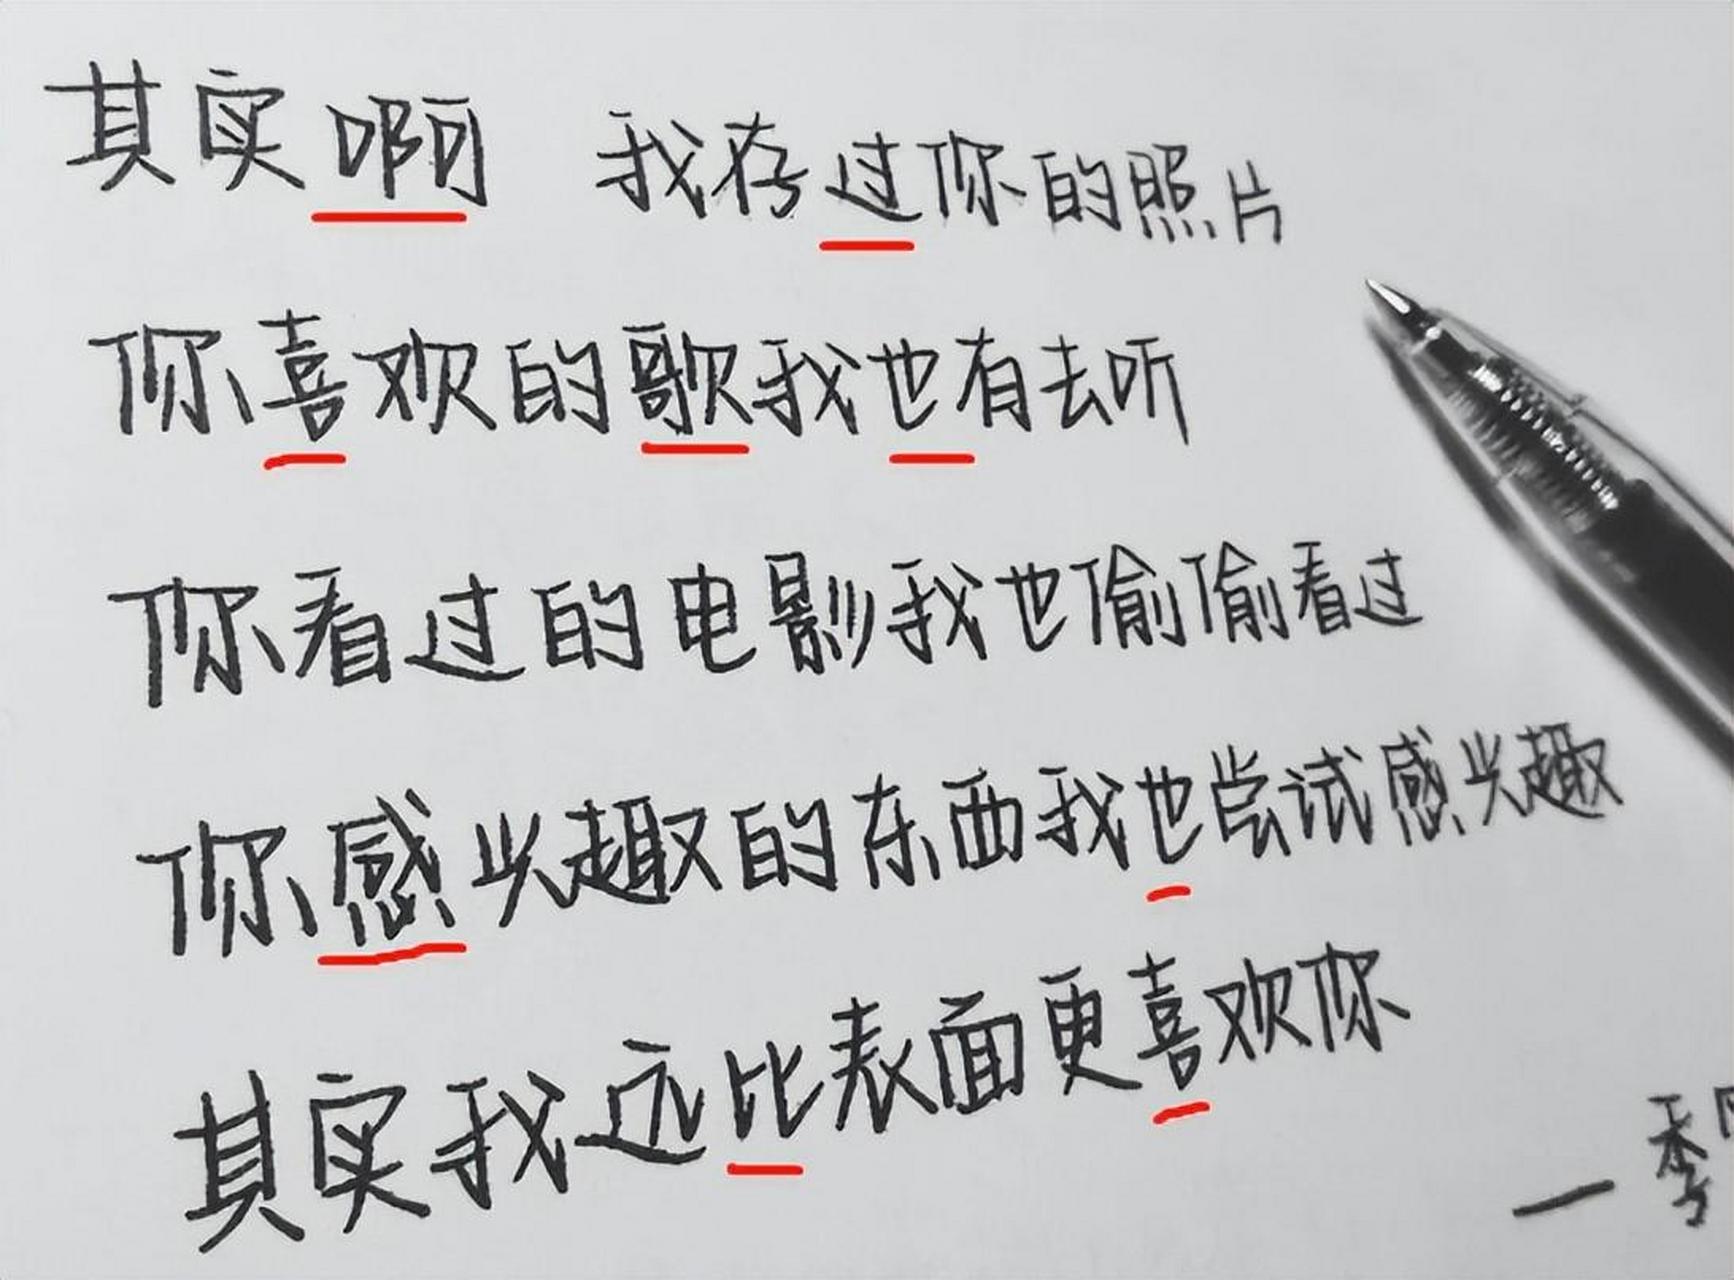 赵今麦字体被认为比网红字体更大气?